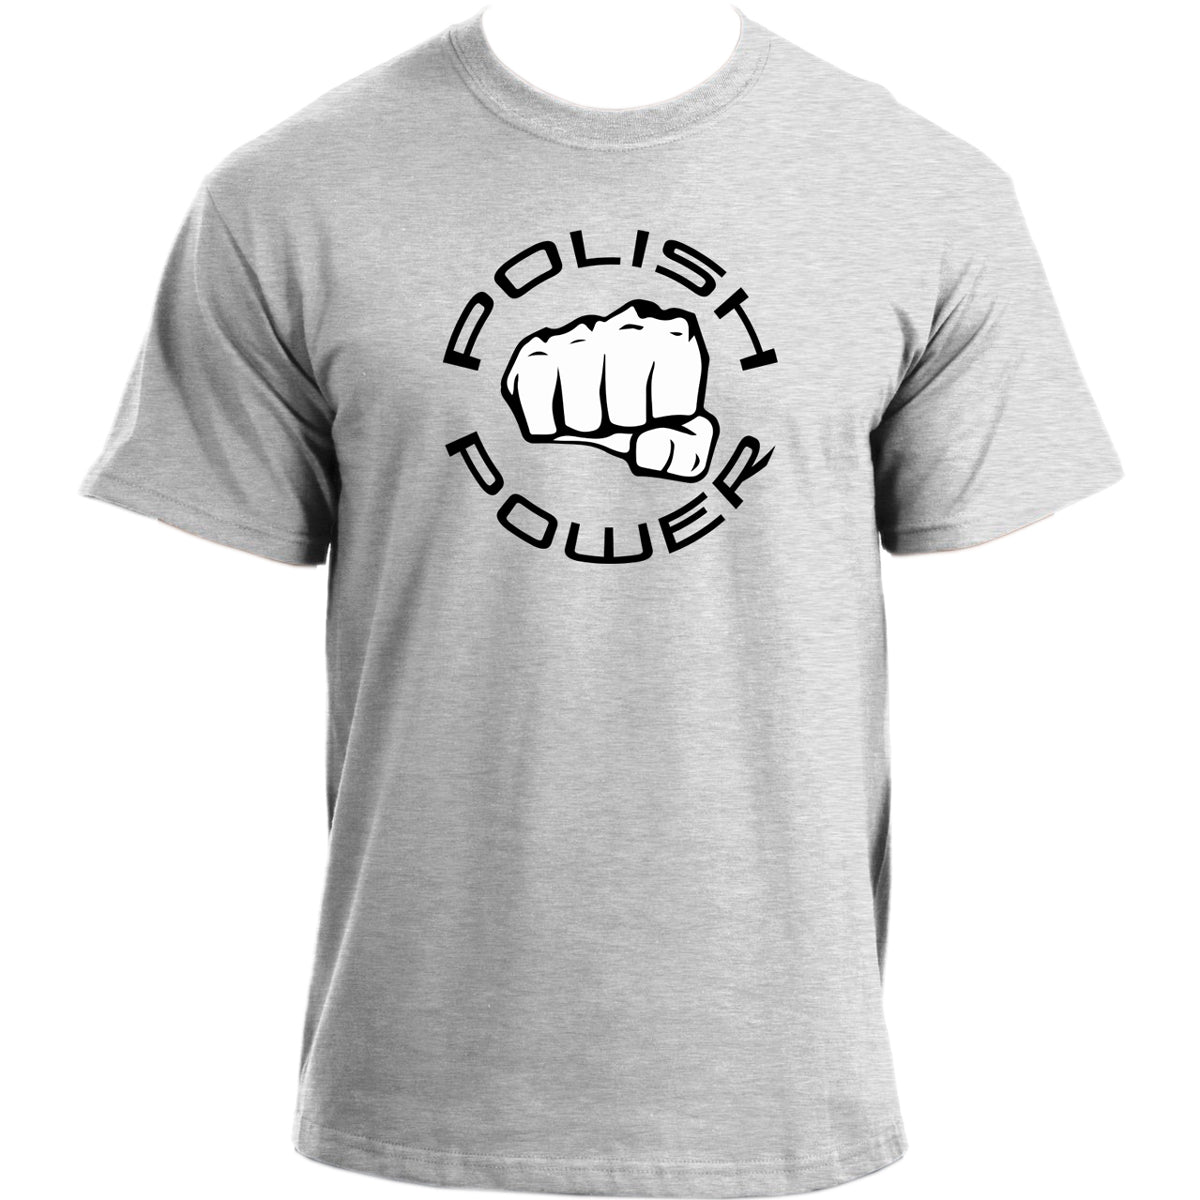 Polish Power T-Shirt I Mixed Martial Artist Inspired Tshirt I Polish Tshirt